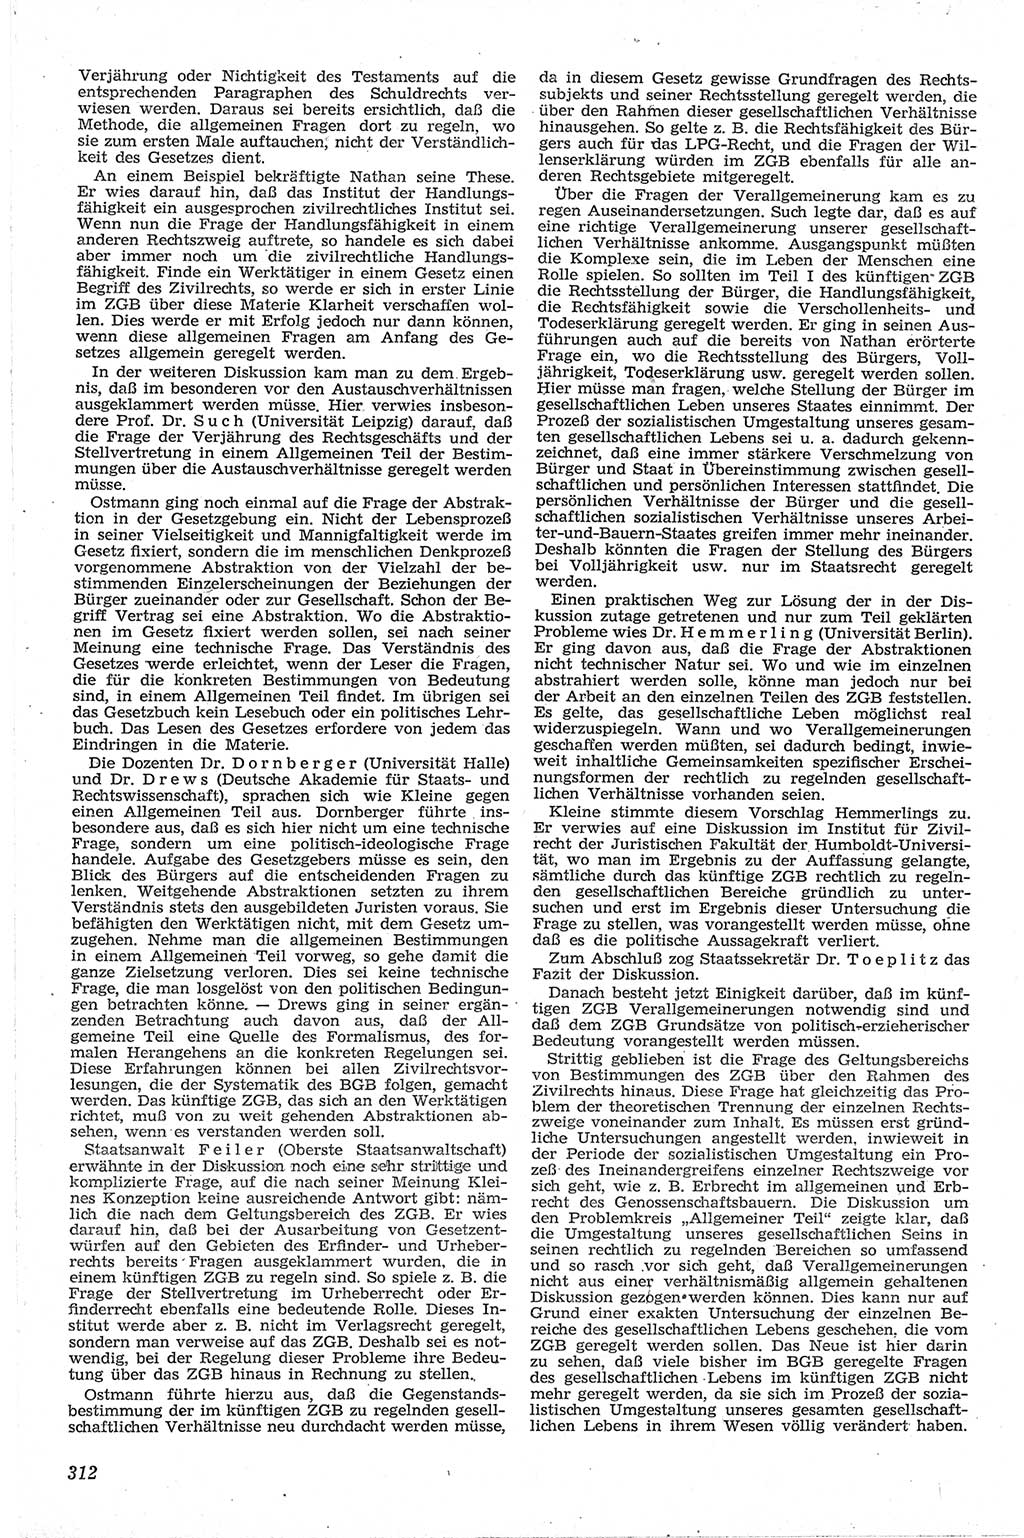 Neue Justiz (NJ), Zeitschrift für Recht und Rechtswissenschaft [Deutsche Demokratische Republik (DDR)], 13. Jahrgang 1959, Seite 312 (NJ DDR 1959, S. 312)